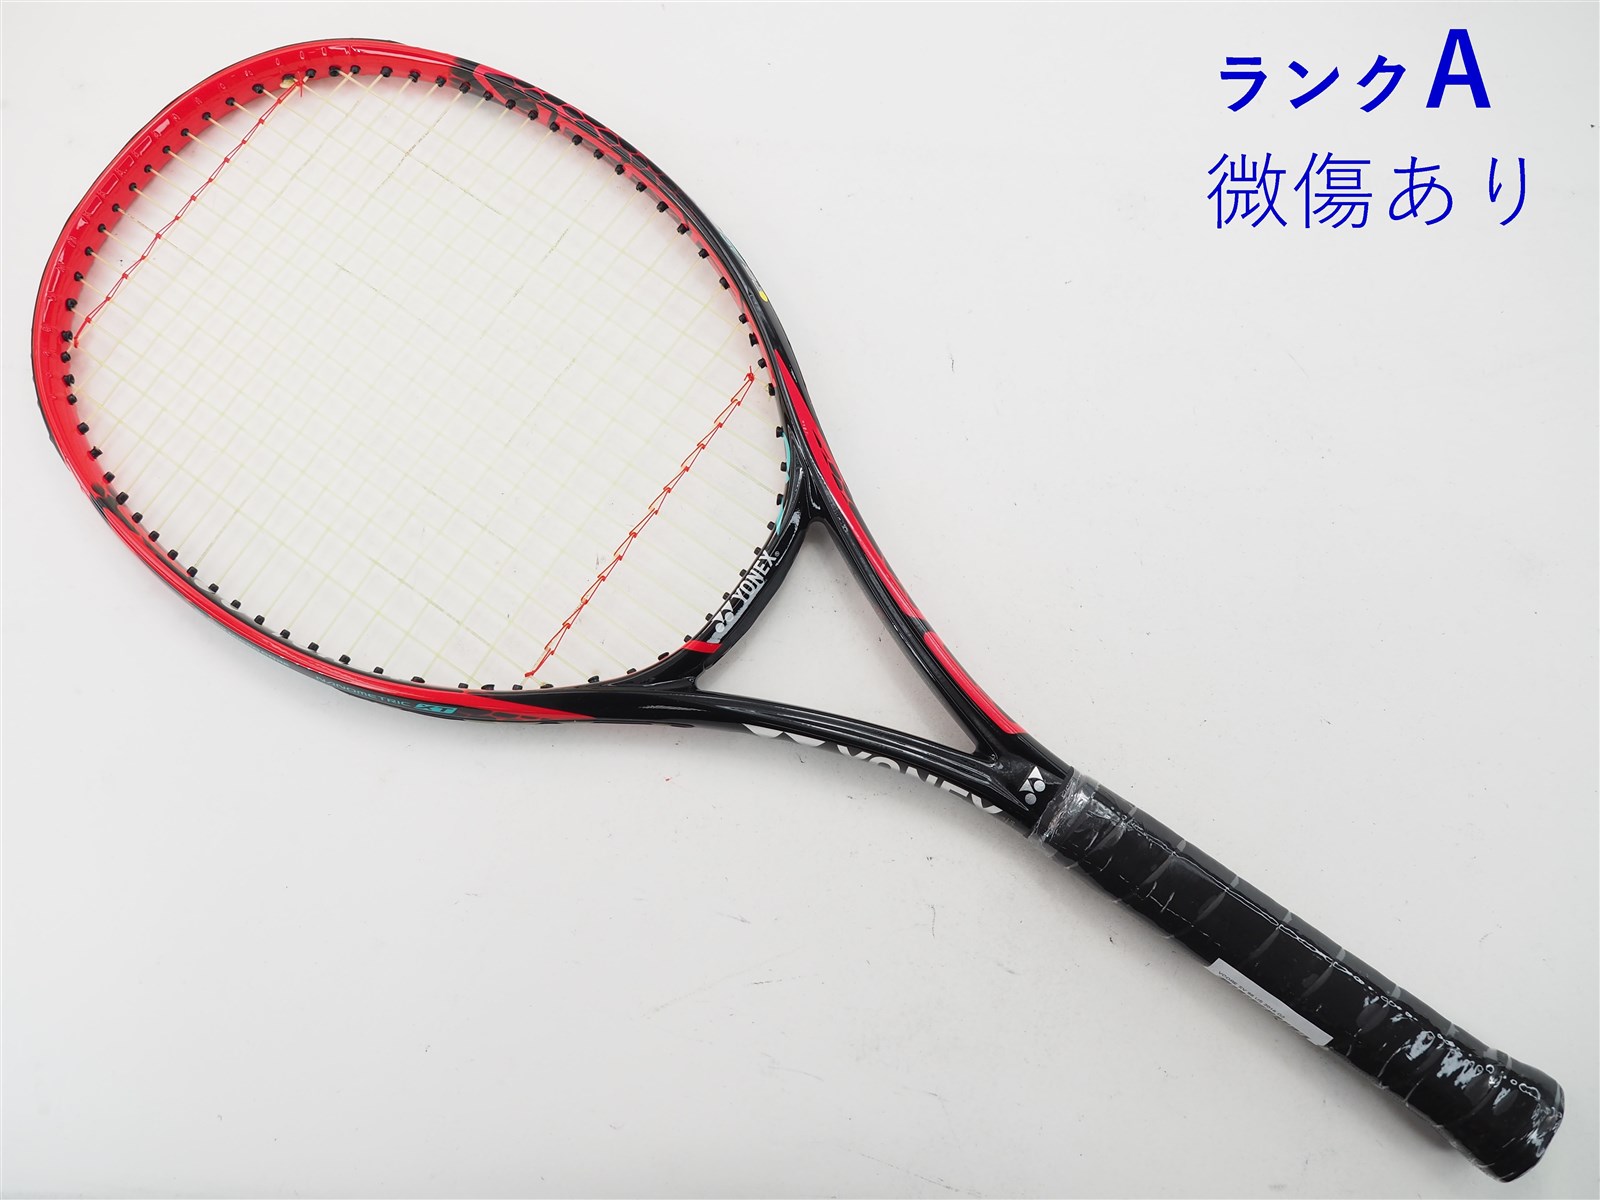 テニスラケット ヨネックス ブイコア エスブイ 98 2016年モデル (G3